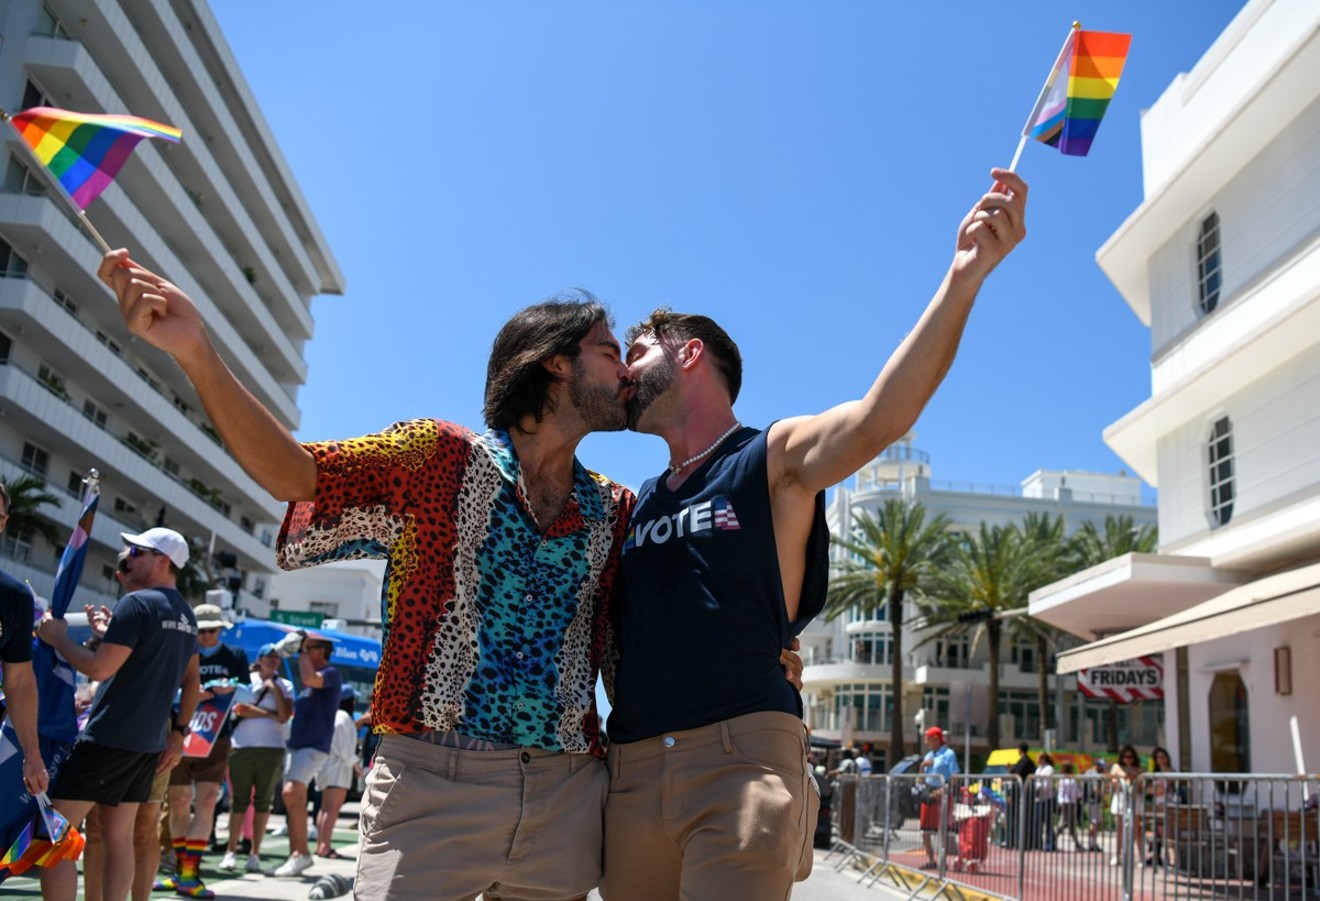 Miami Beach Pride: Celebrating LGBTQ+ Identity and Progress